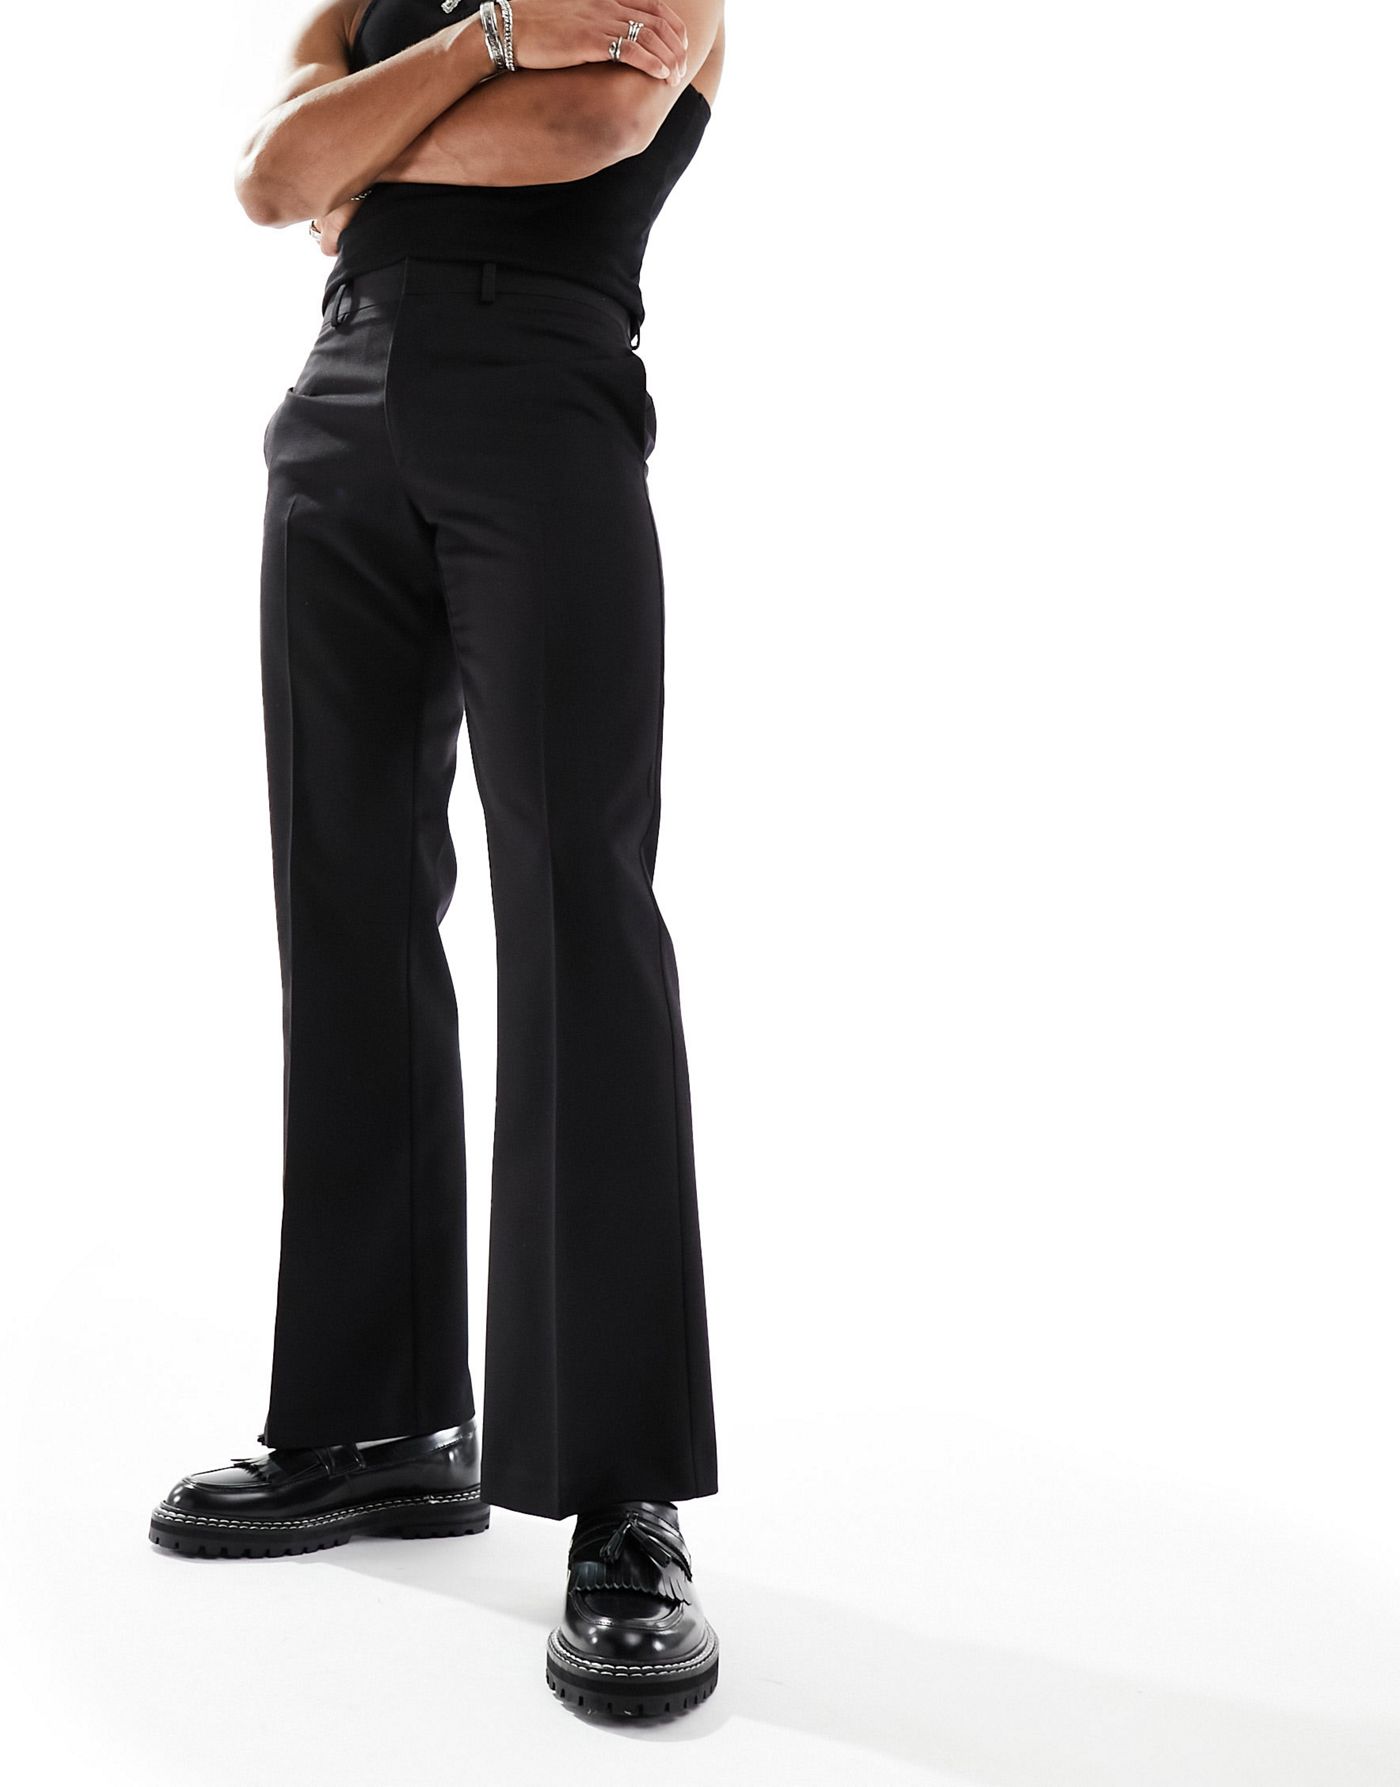 ASOS DESIGN flared smart trouser in black